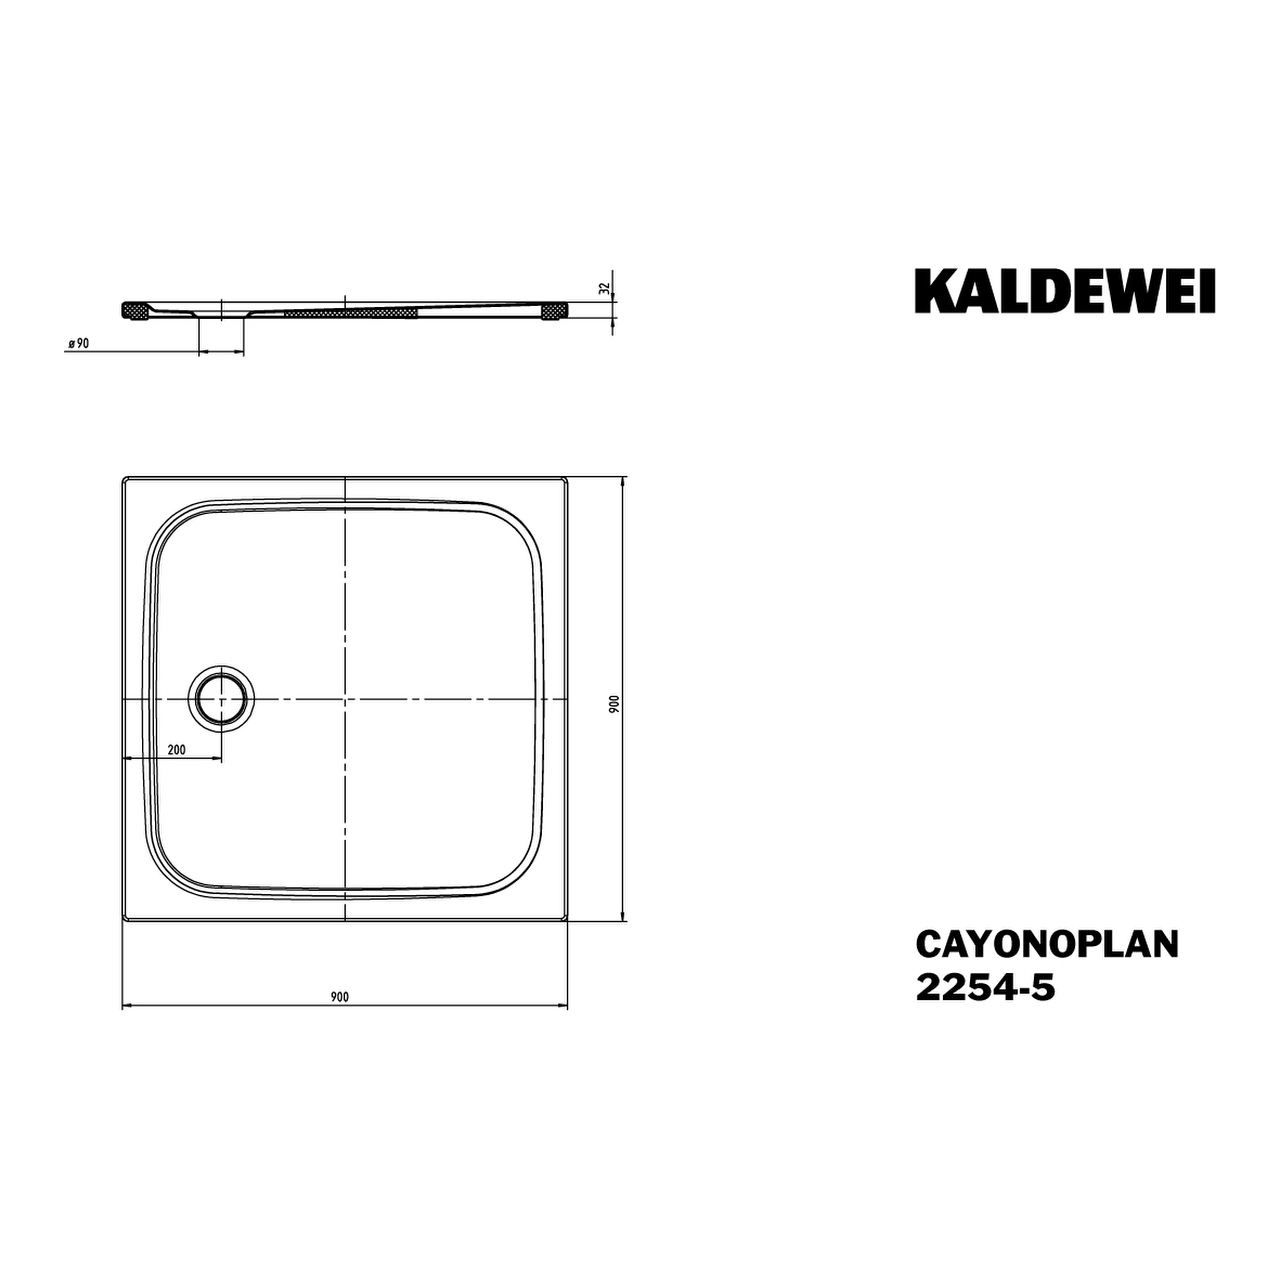 Kaldewei quadrat Duschwanne „Cayonoplan“ 90 × 90 cm in schwarz matt